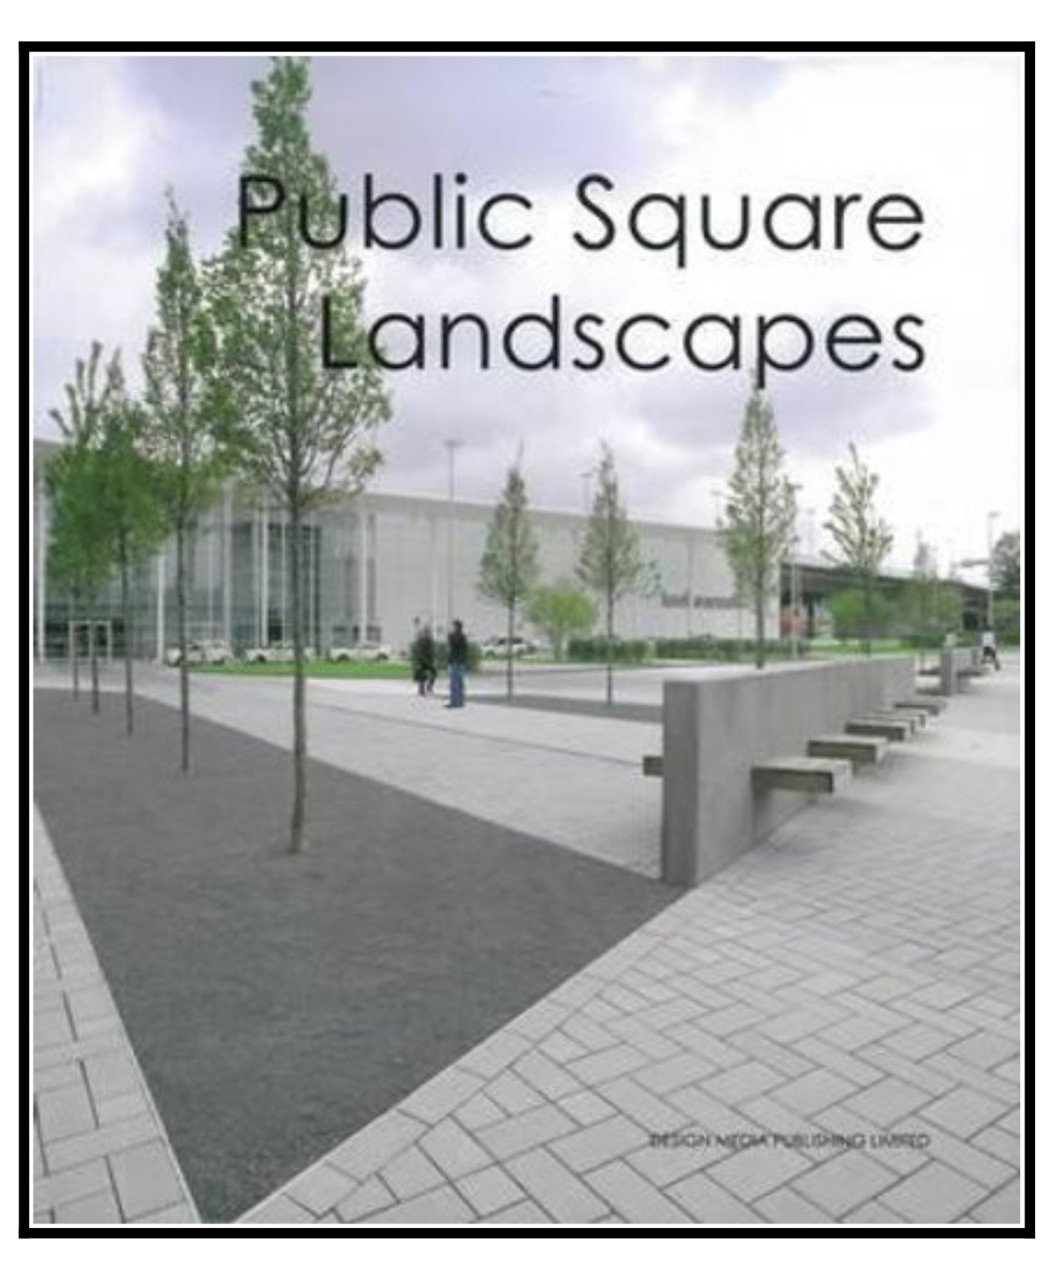 Public Square Landscapes (MEYDAN TASARIMLARI)